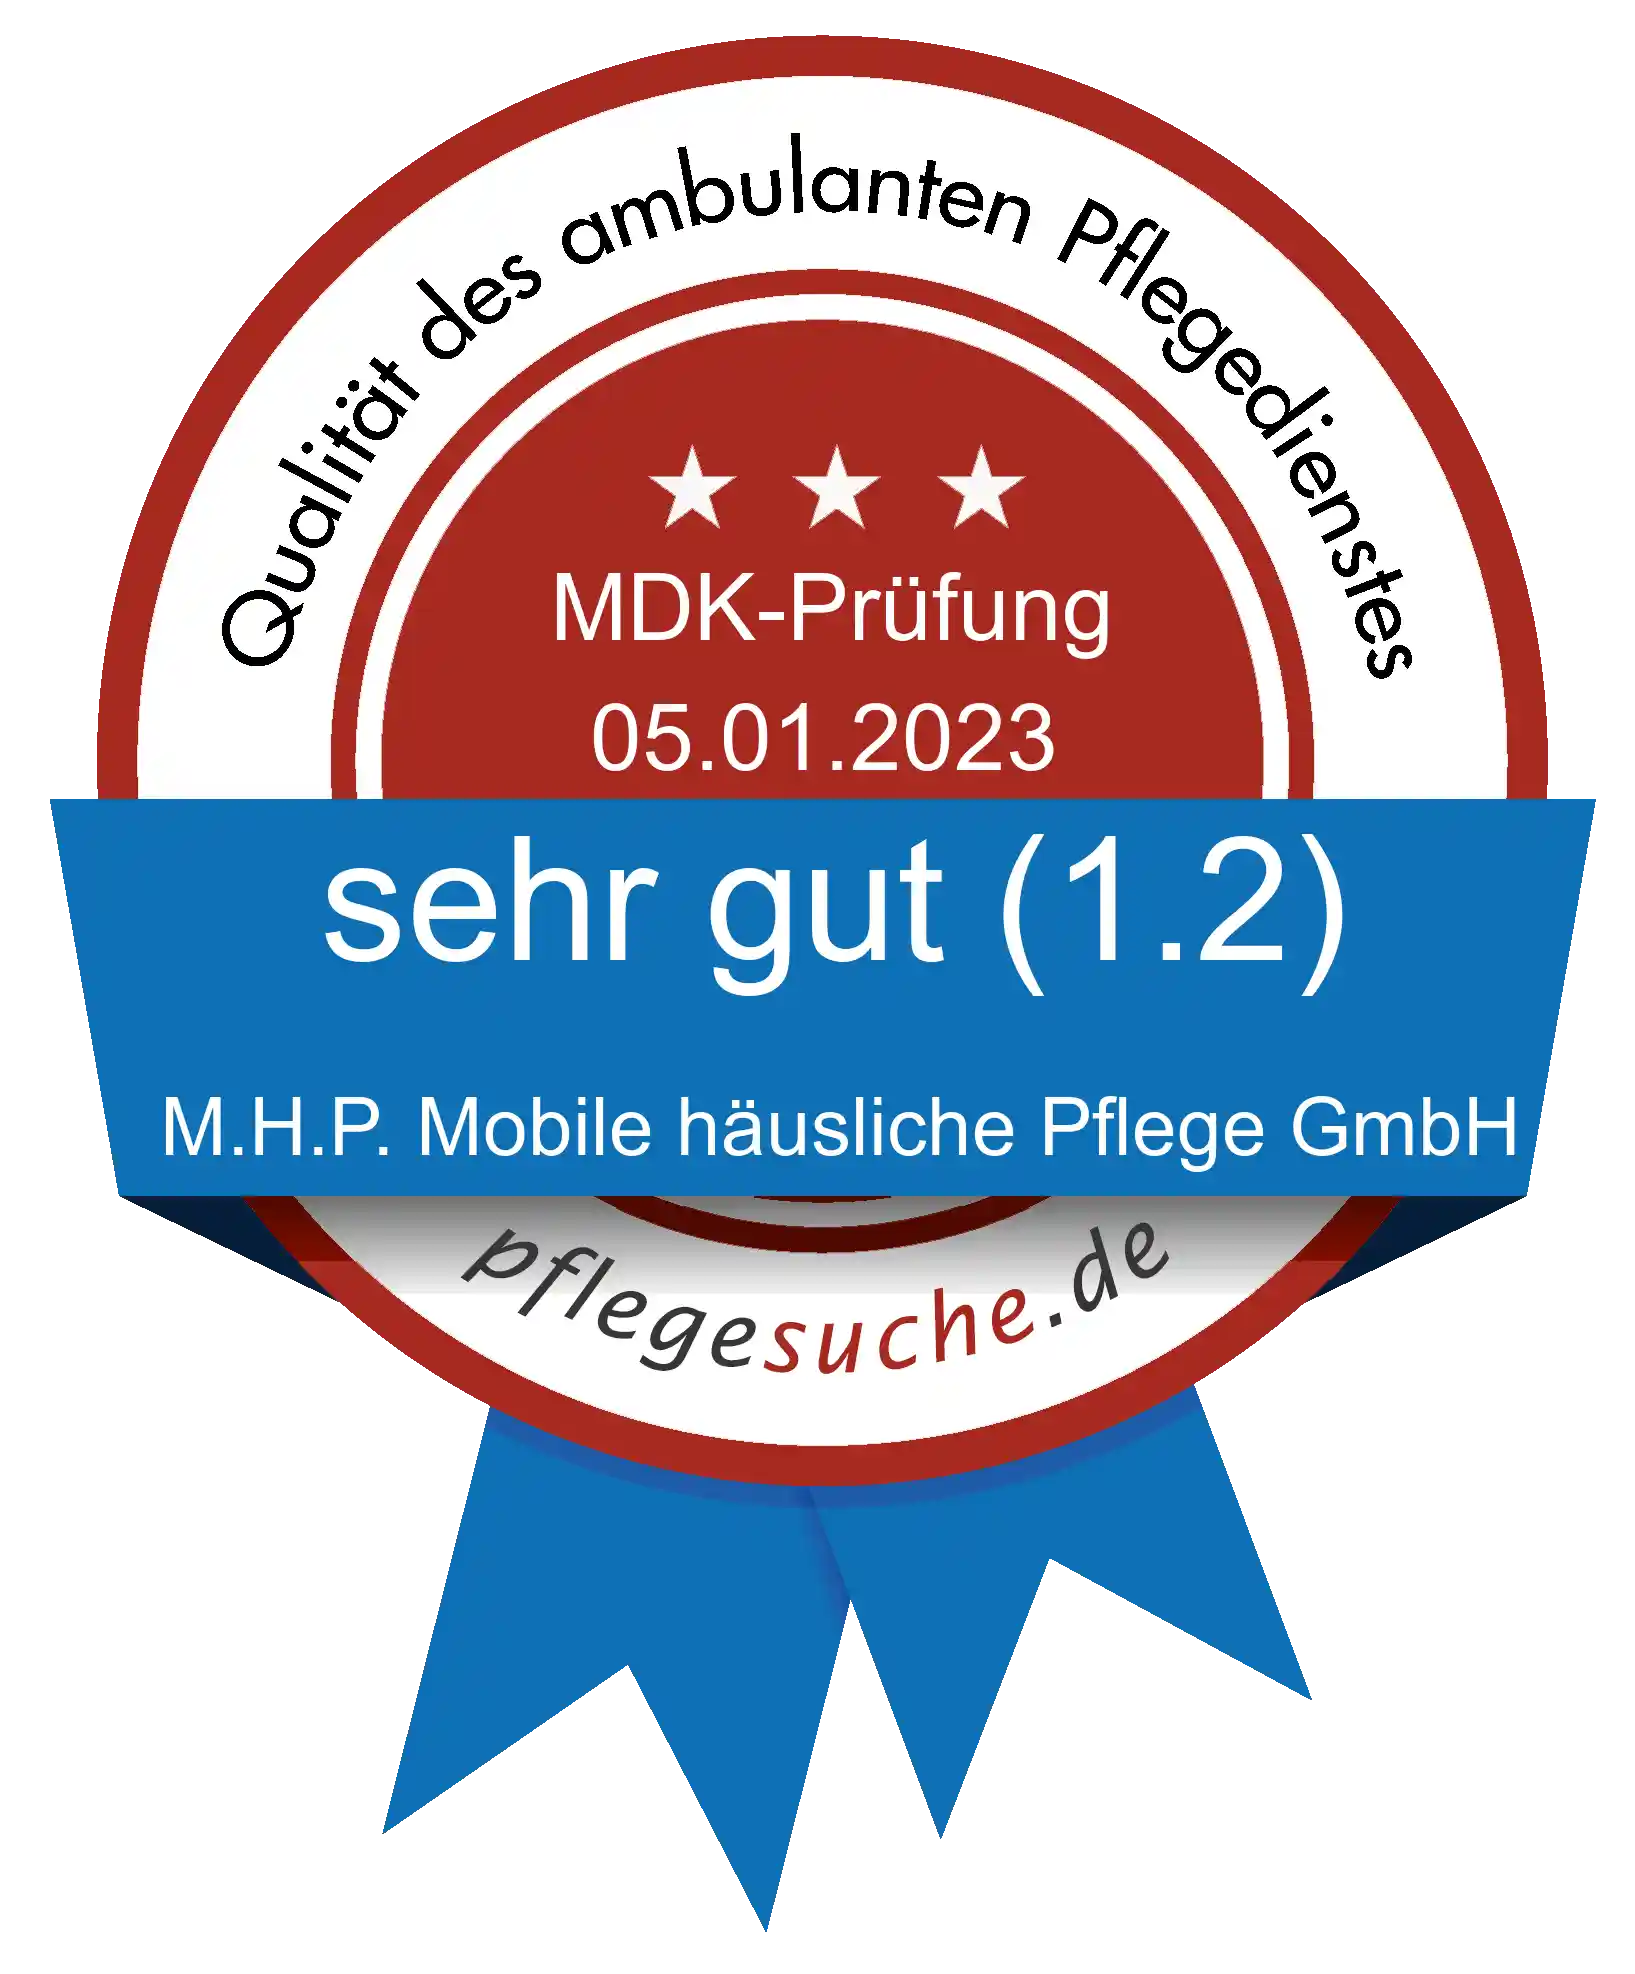 Siegel Benotung: M.H.P. Mobile häusliche Pflege GmbH